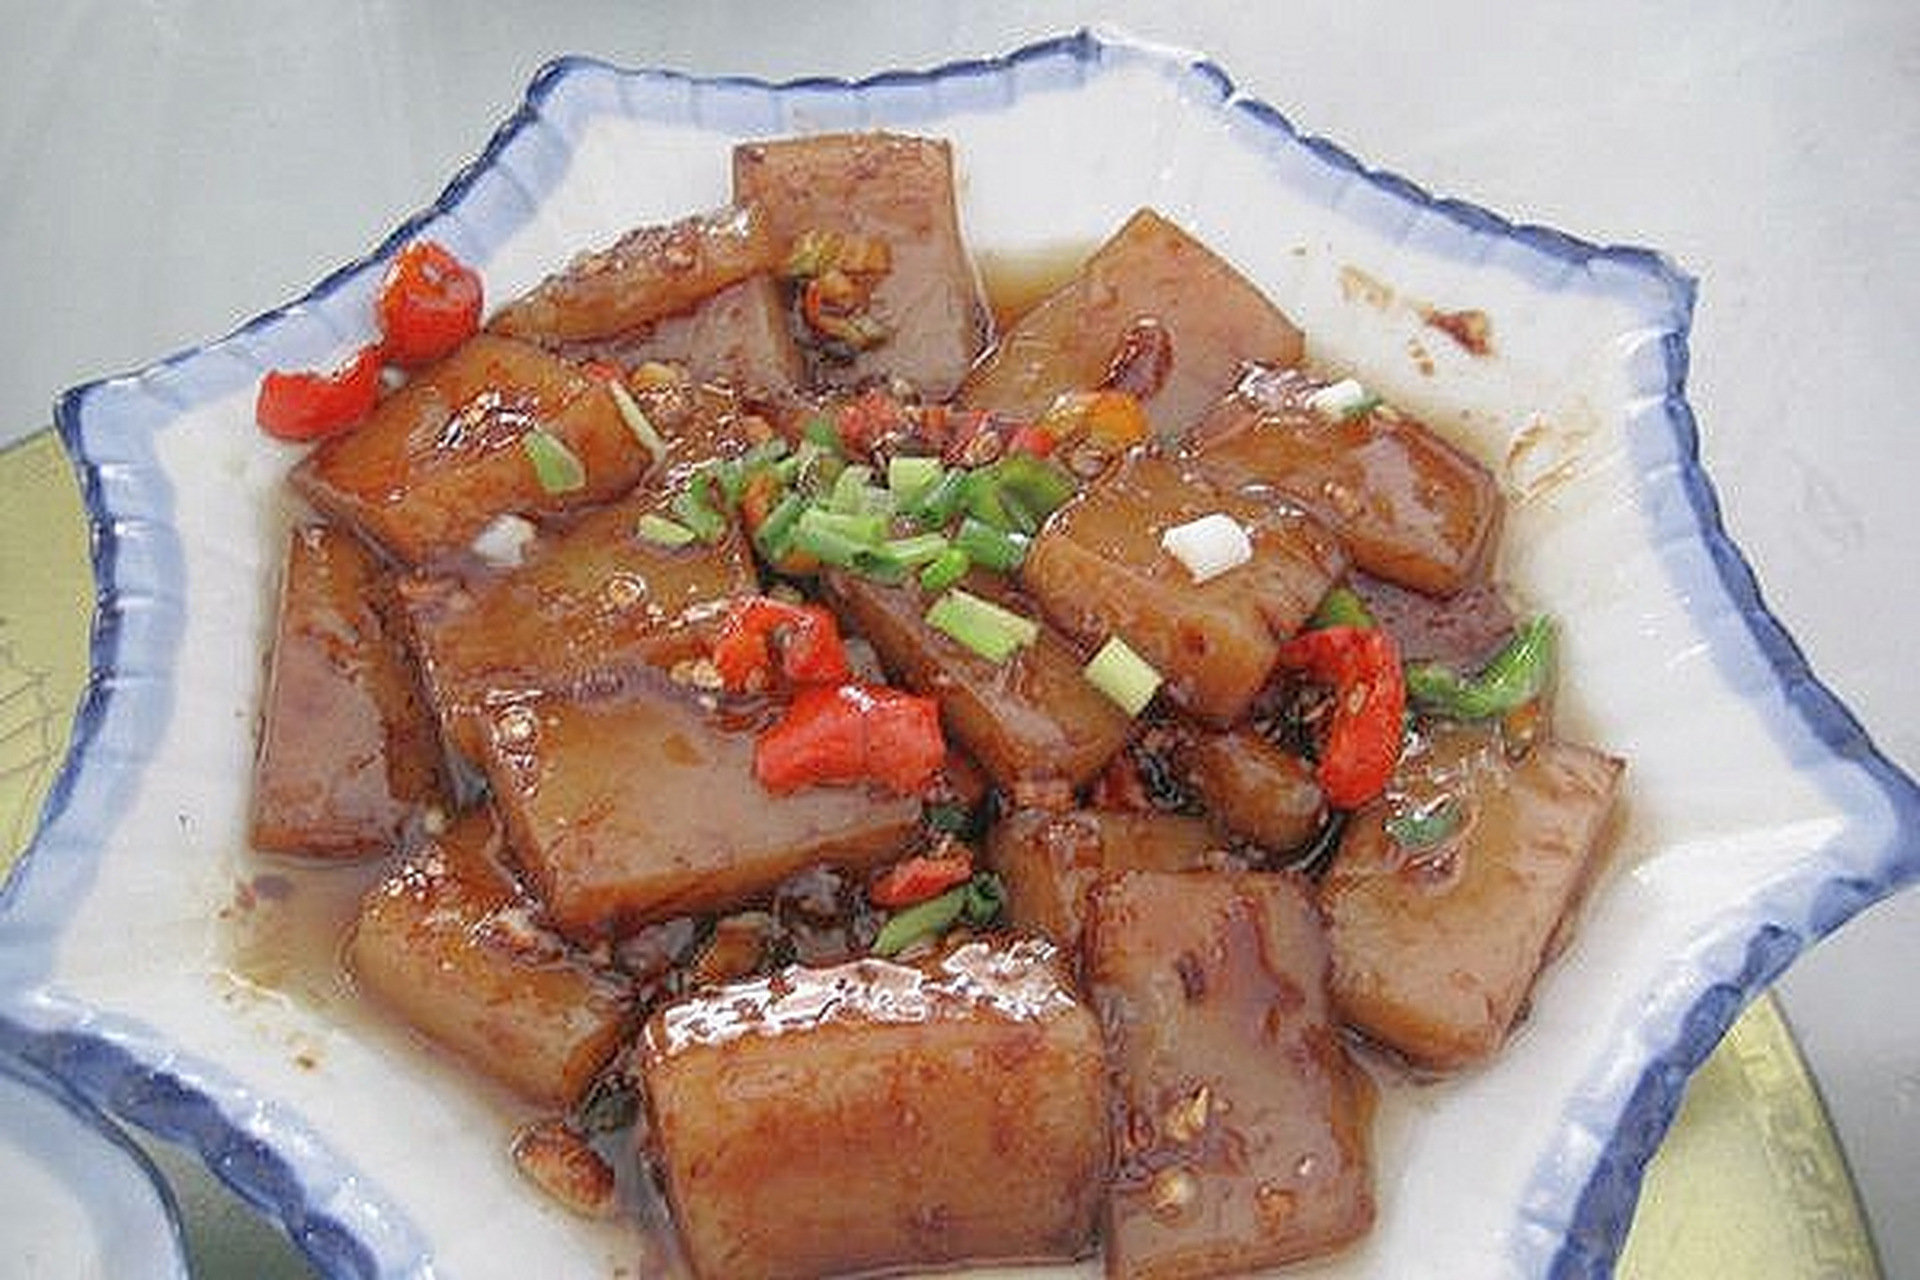 苦槠豆腐的营养与功效 苦槠豆腐吃起来细,软,糯,滑,清香爽口,是一种